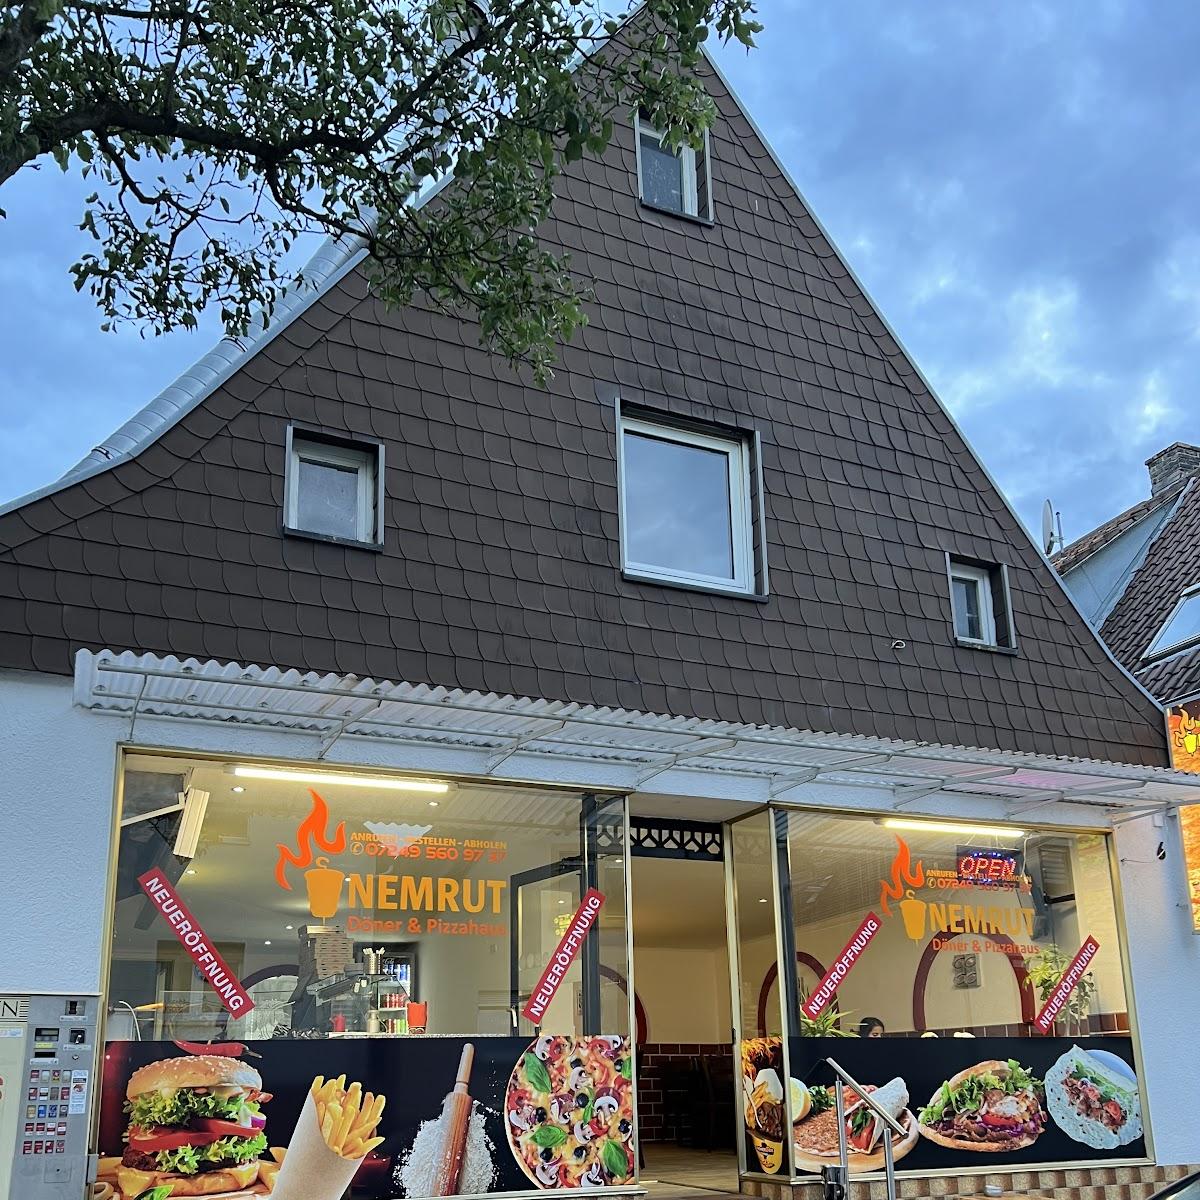 Restaurant "Nemrut Döner & Pizzahaus" in Stutensee